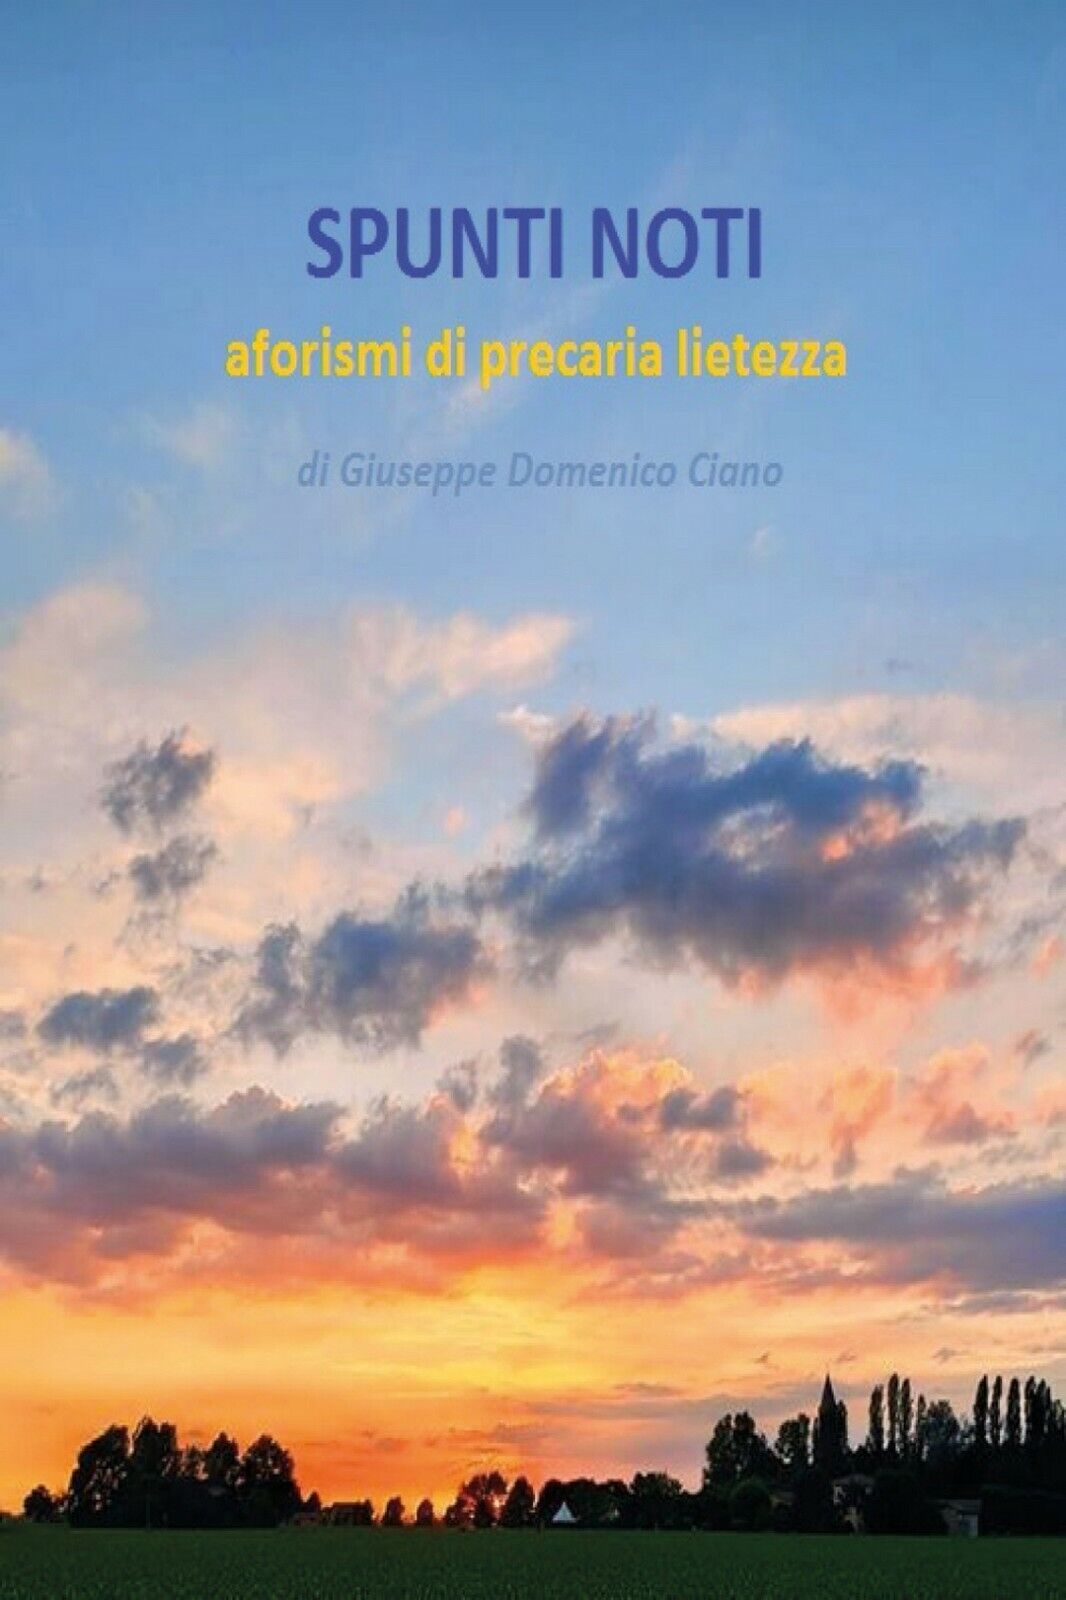 SPUNTI NOTI - aforismi di precaria lietezza, Giuseppe Ciano,  2020,  Youcanprint libro usato